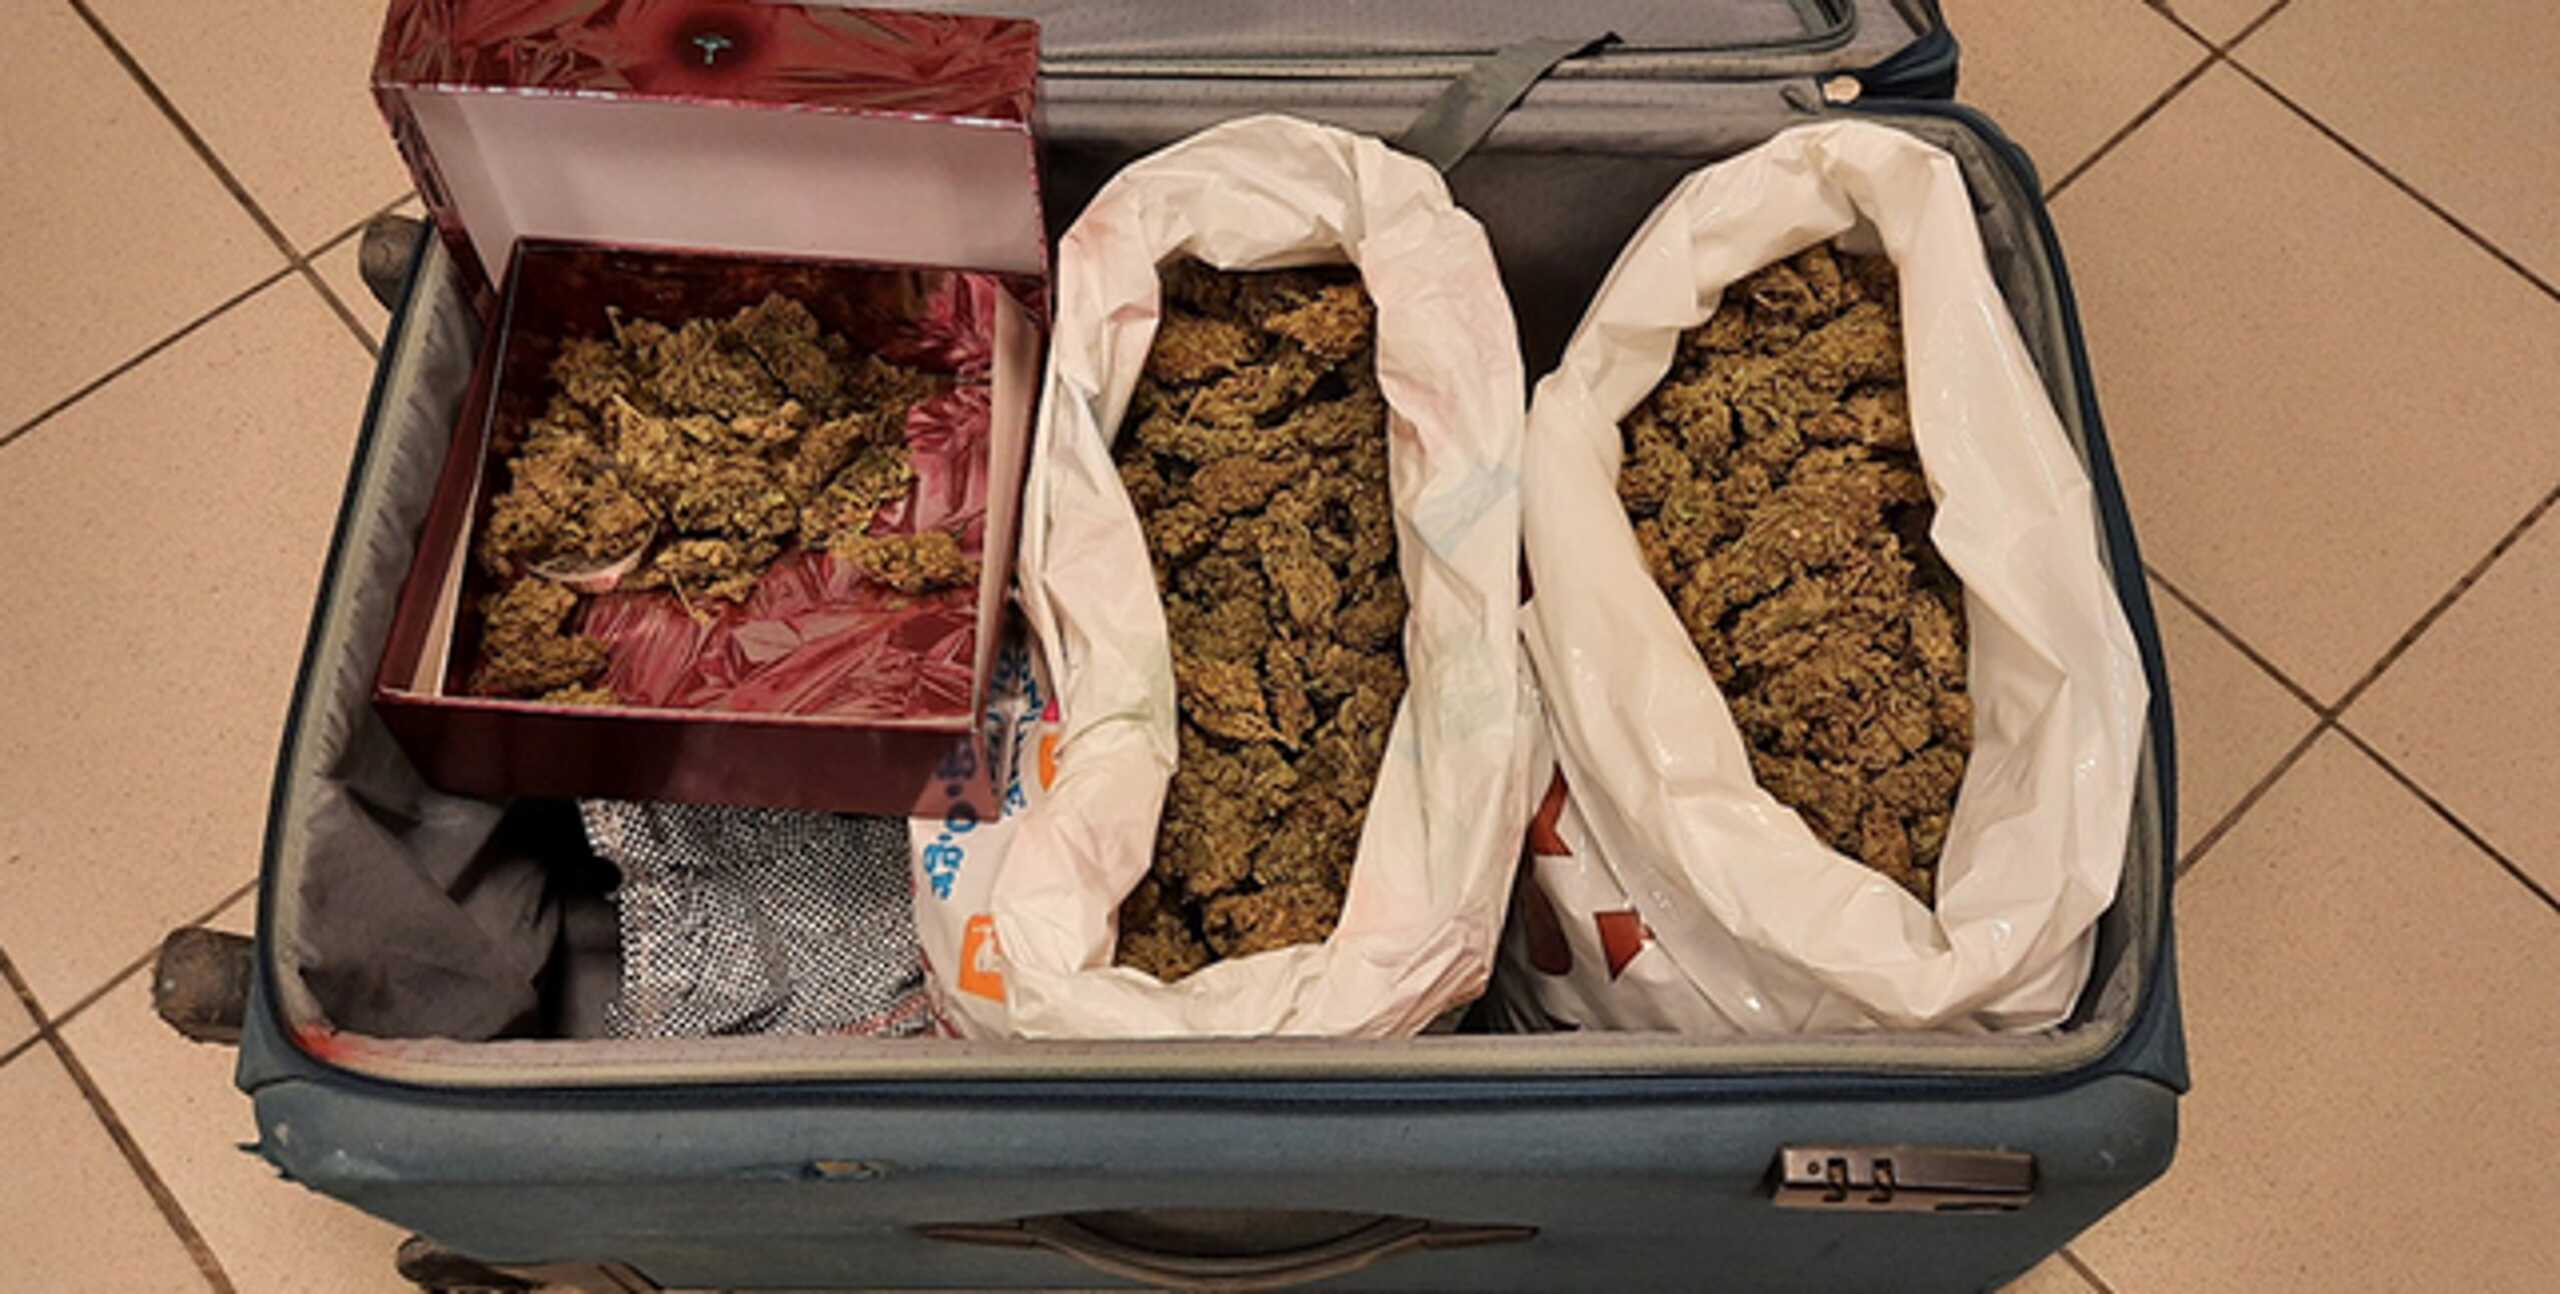 Ηράκλειο: Μέσα στην γκαρσονιέρα αυτή η βαλίτσα – Επιβεβαιώθηκαν οι πληροφορίες των αστυνομικών